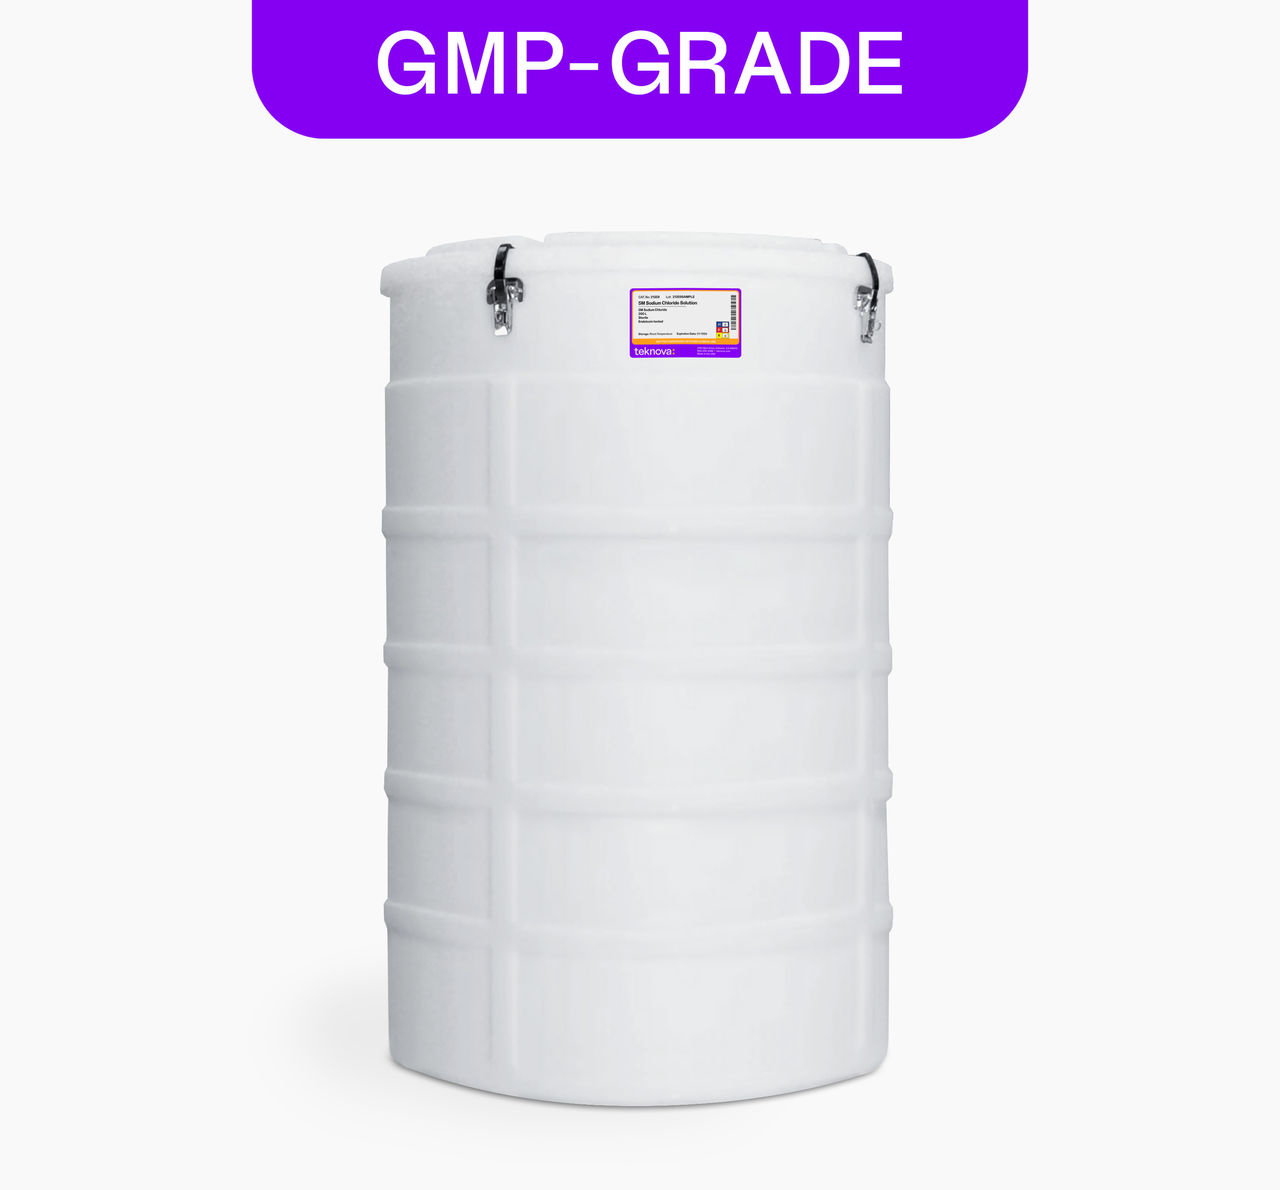 5M Sodium Chloride Solution, 200L bag, GMP-grade